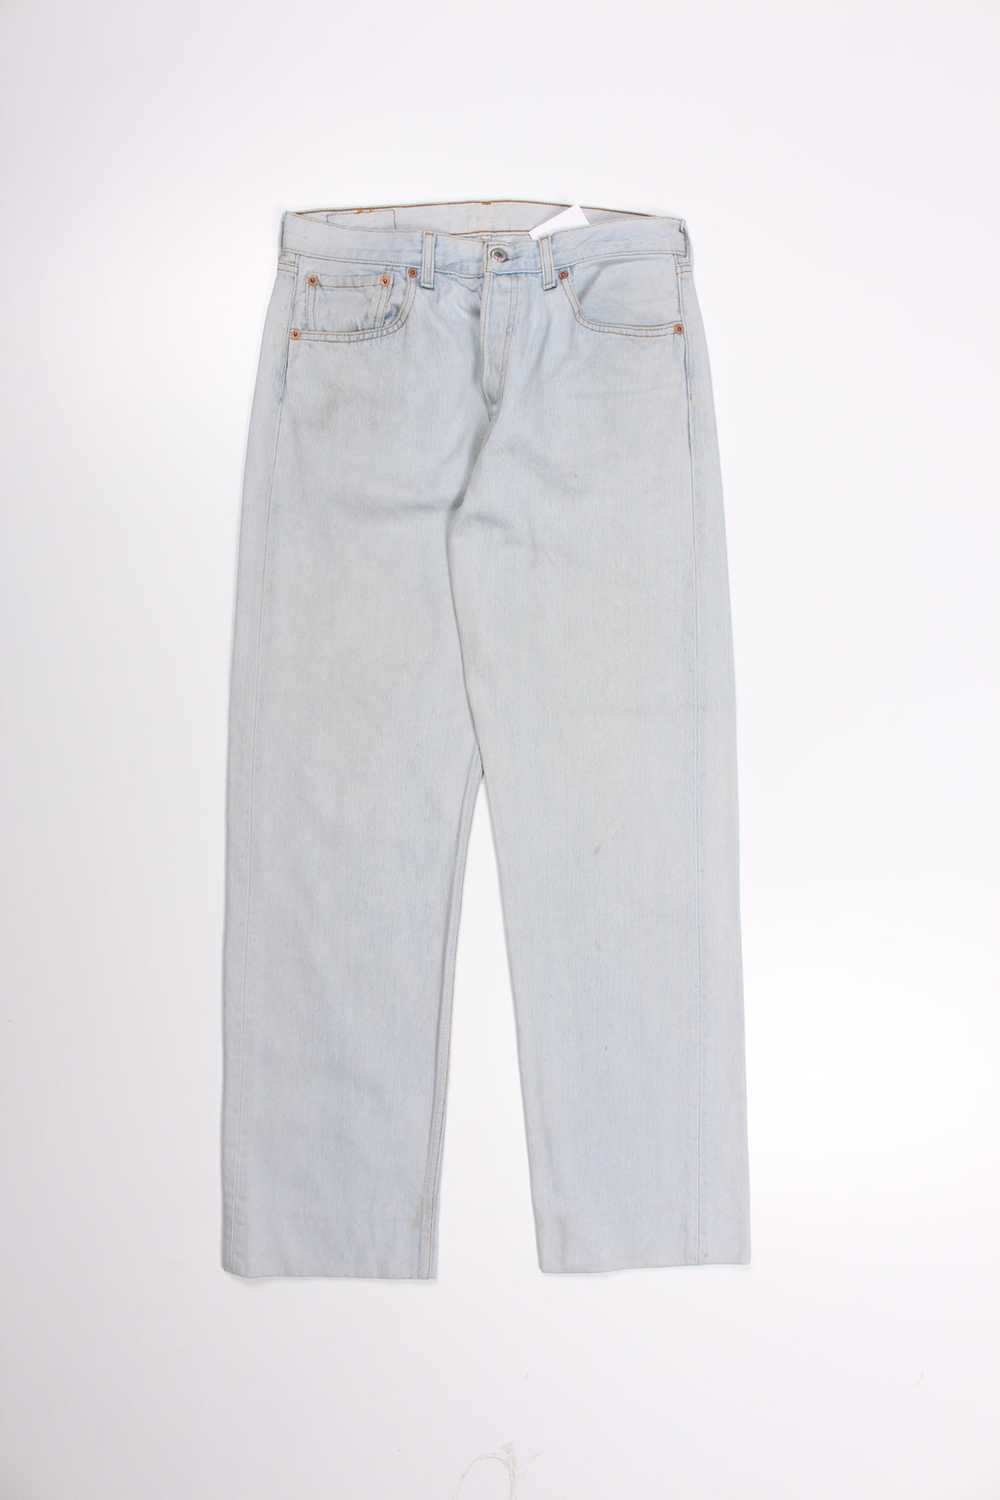 Men's Vintage Levi's 501 Denim Jeans W32 x L30 - image 2